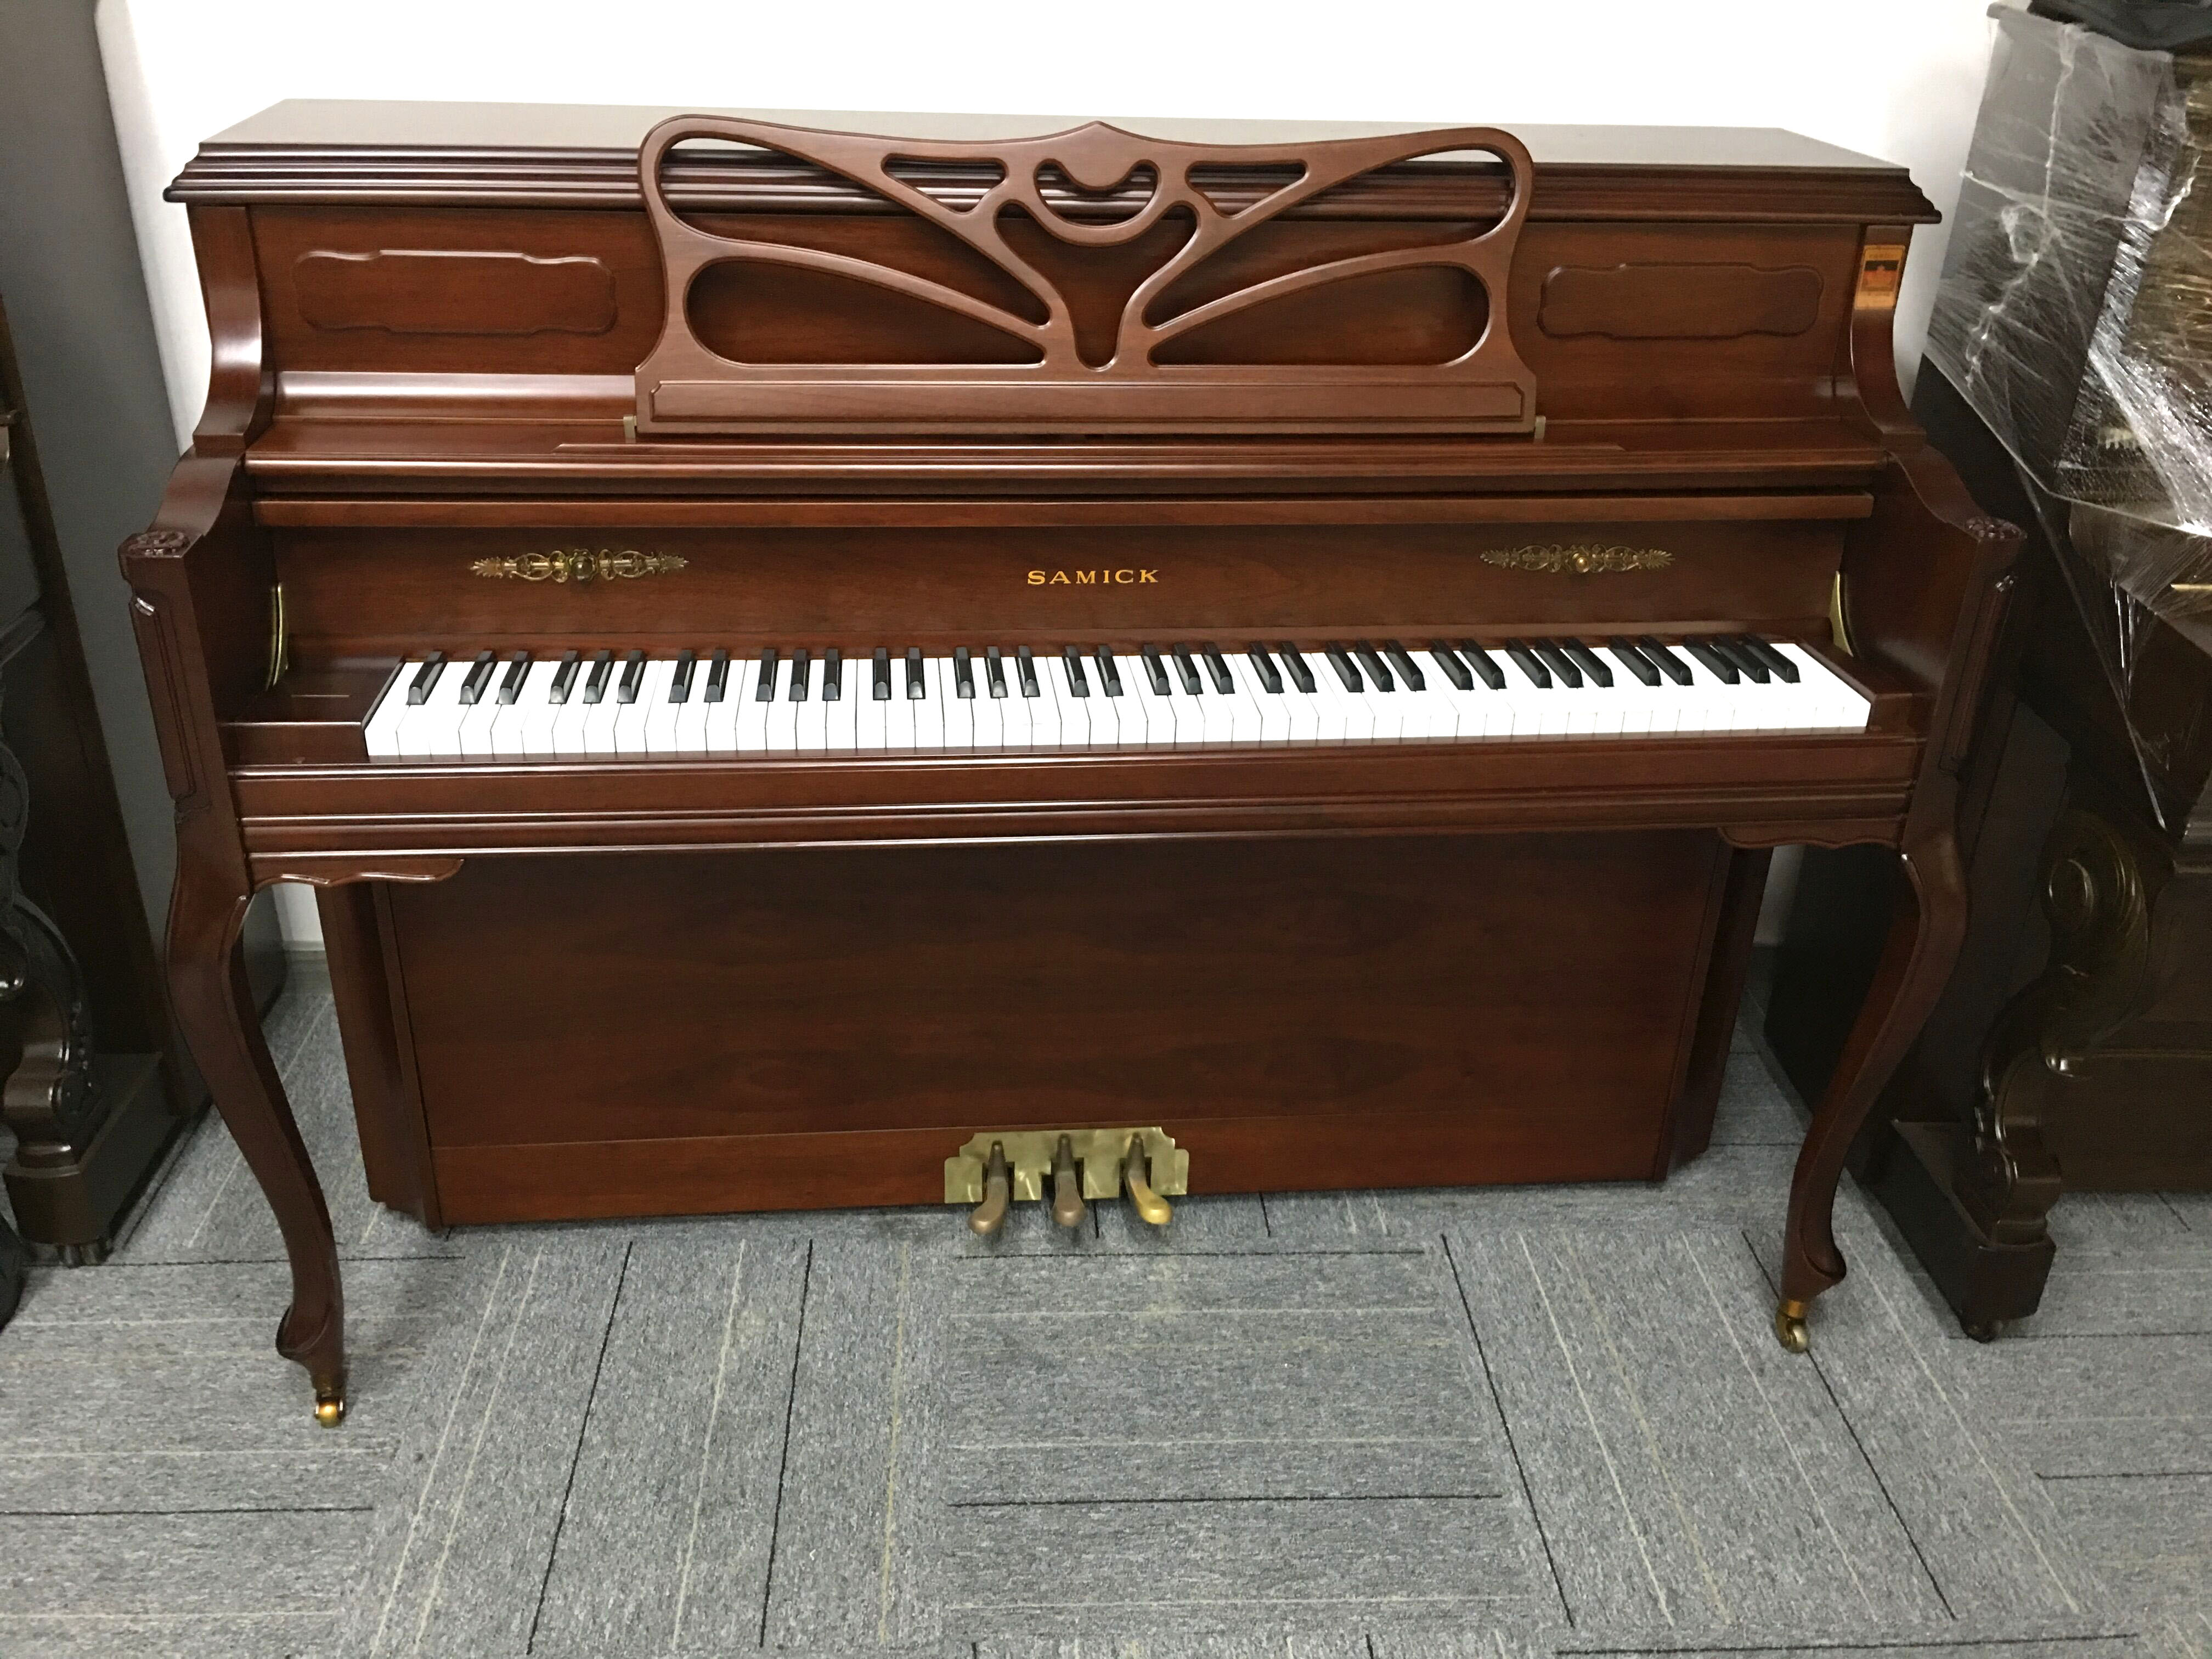 广州二手钢琴 韩国原装进口二手钢琴三益SC-504 原木色状态好